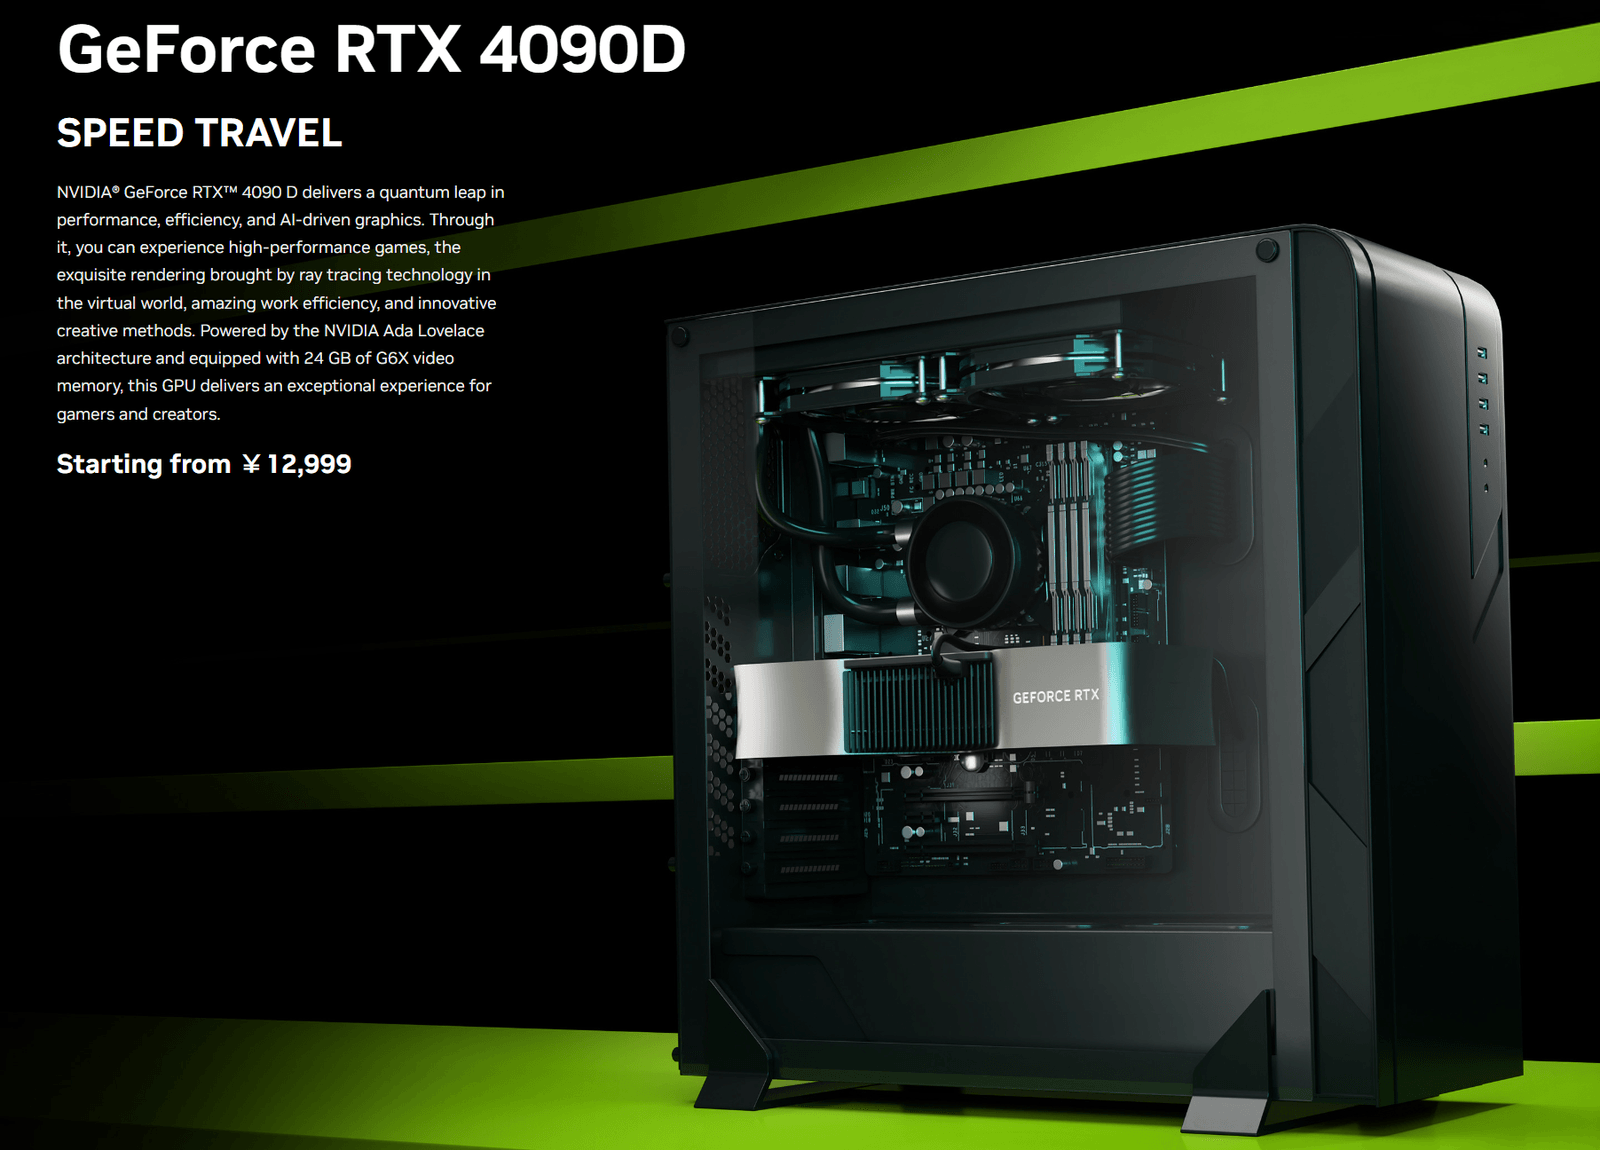 GeForce RTX 4090 D